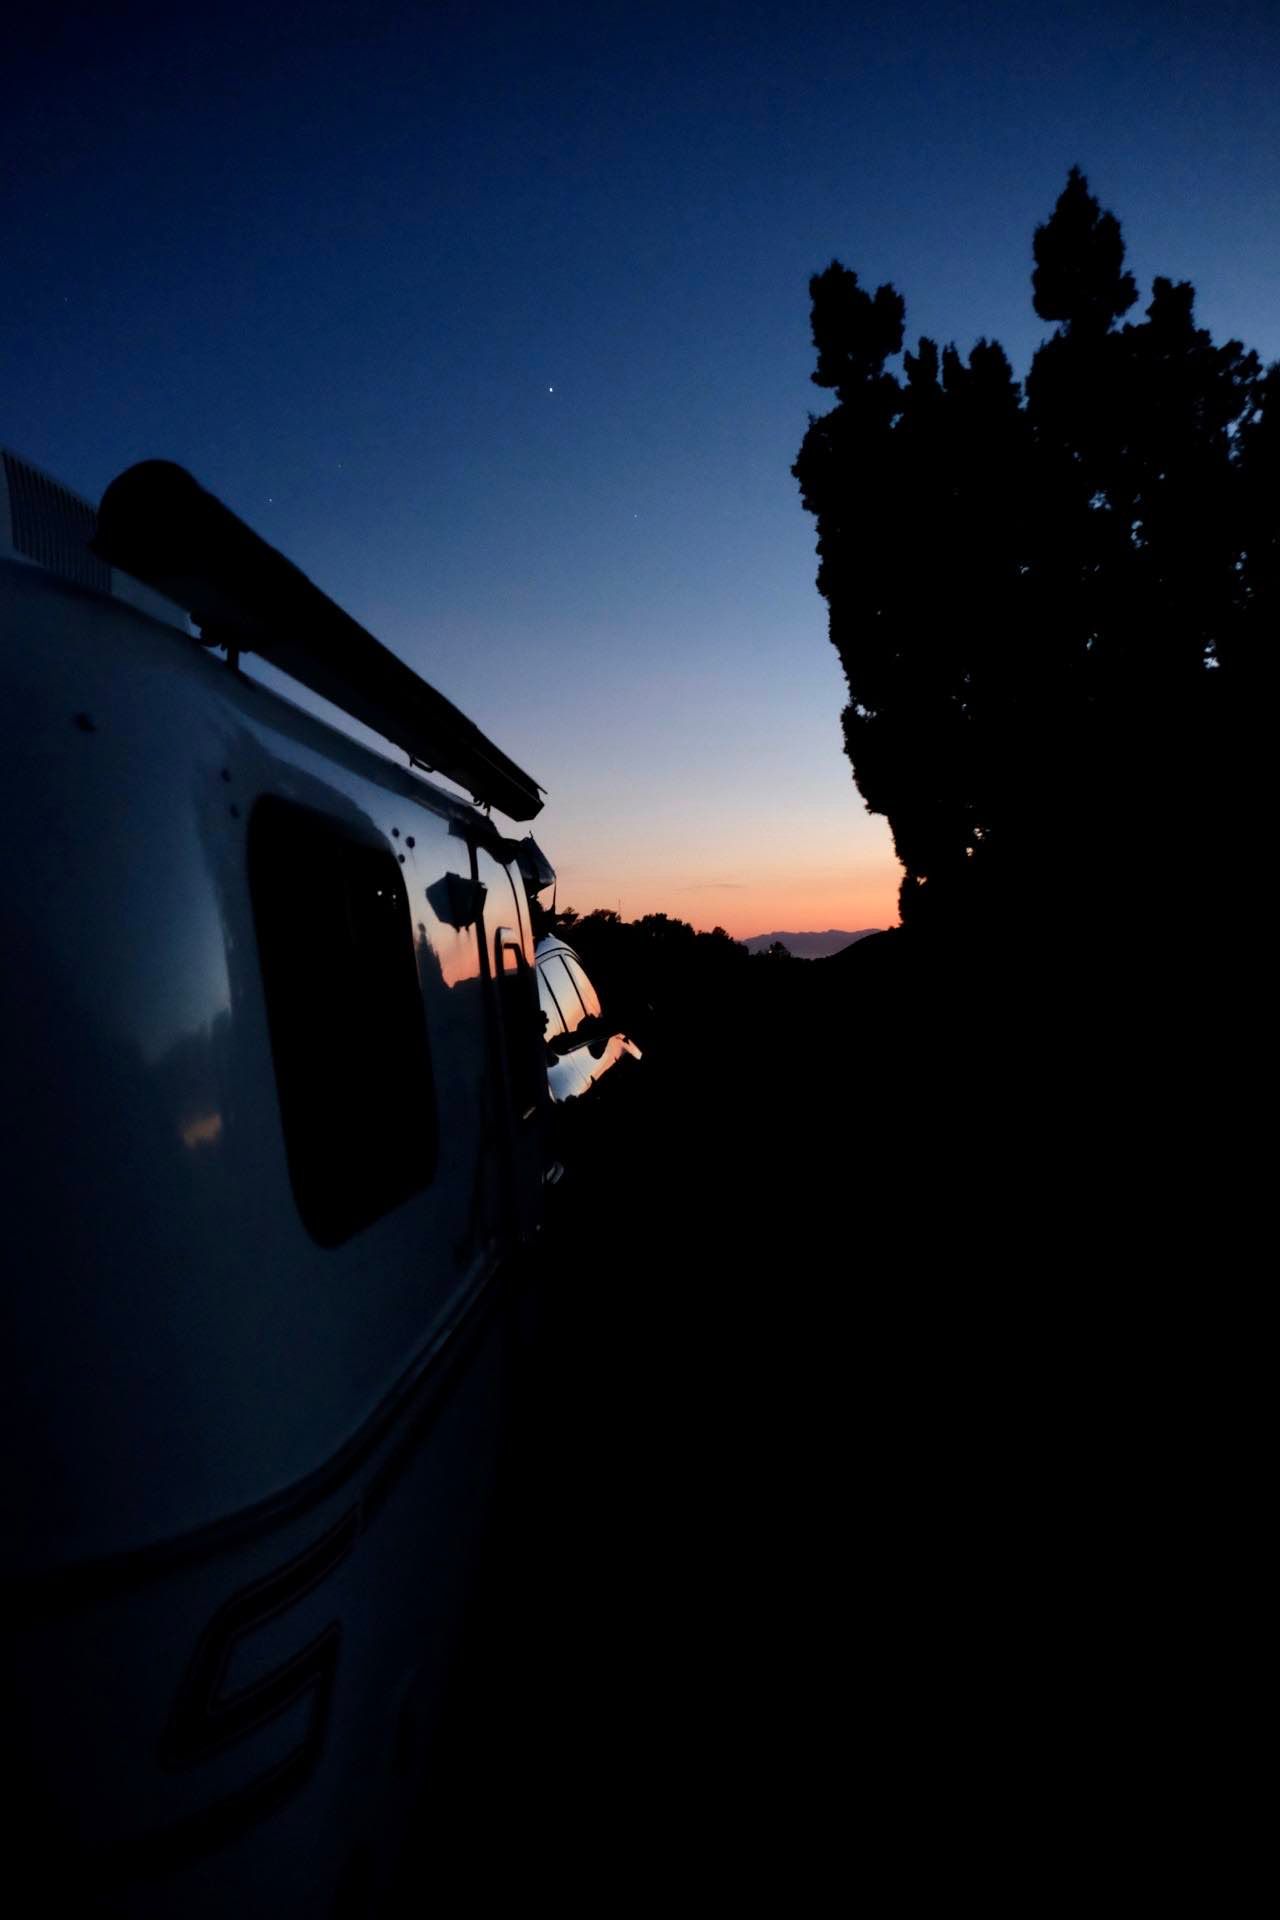 _images/Camper sunset.jpg